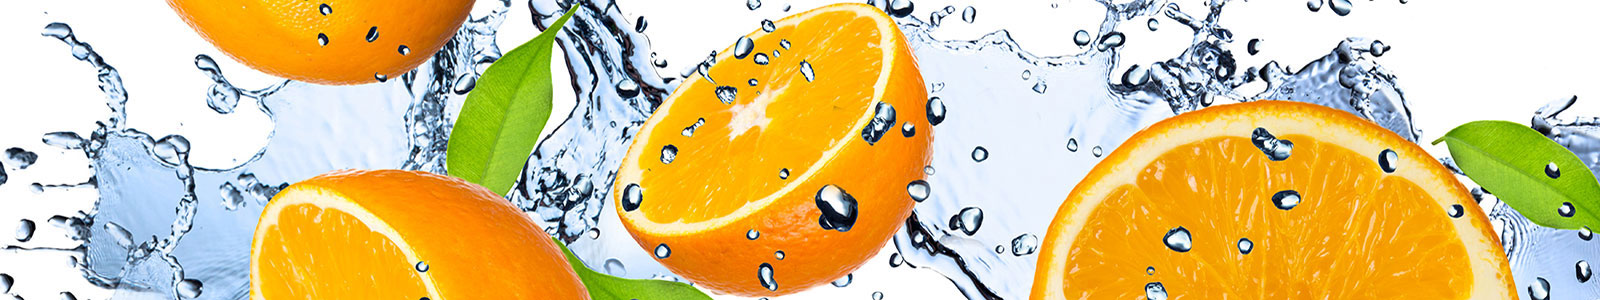 №1131 - Красивые разрезанные апельсины